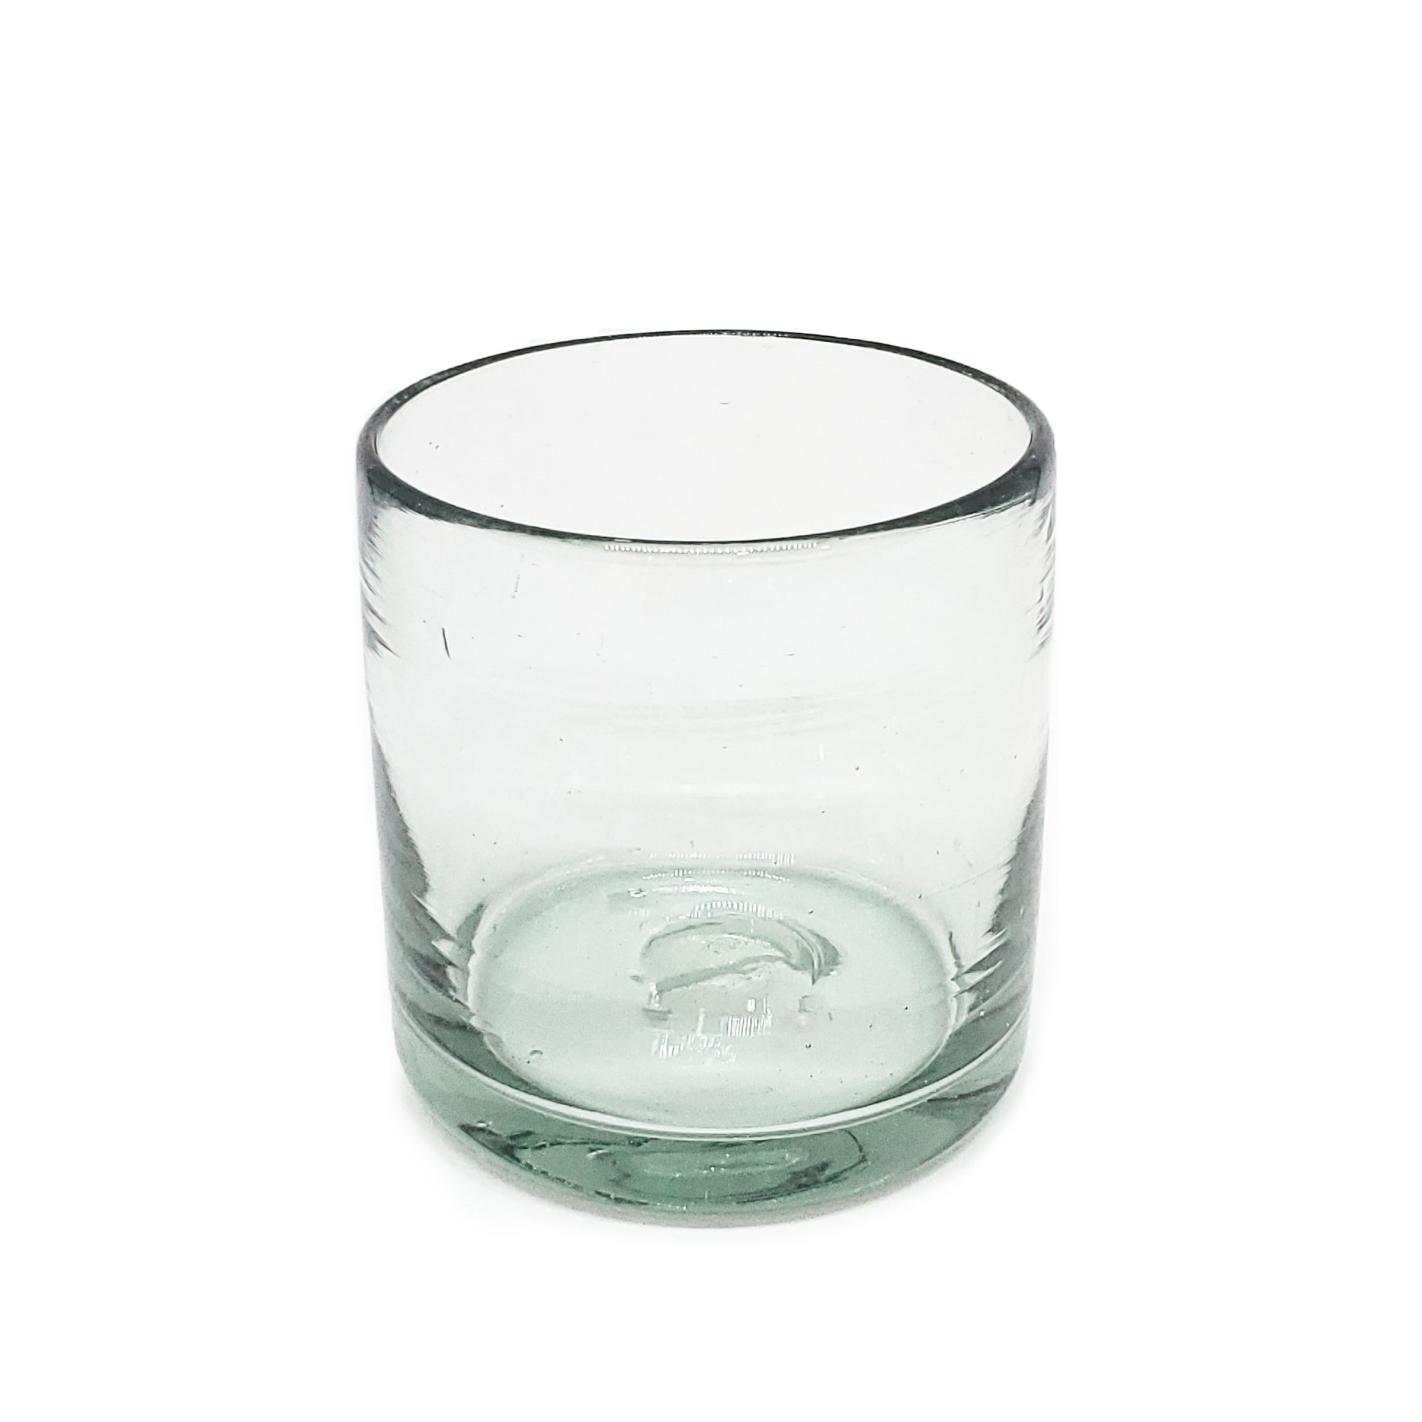 VIDRIO SOPLADO al Mayoreo / vasos DOF 8oz Transparentes, 8 oz, Vidrio Reciclado, Libre de Plomo y Toxinas / stos artesanales vasos le darn un toque clsico a su bebida favorita.